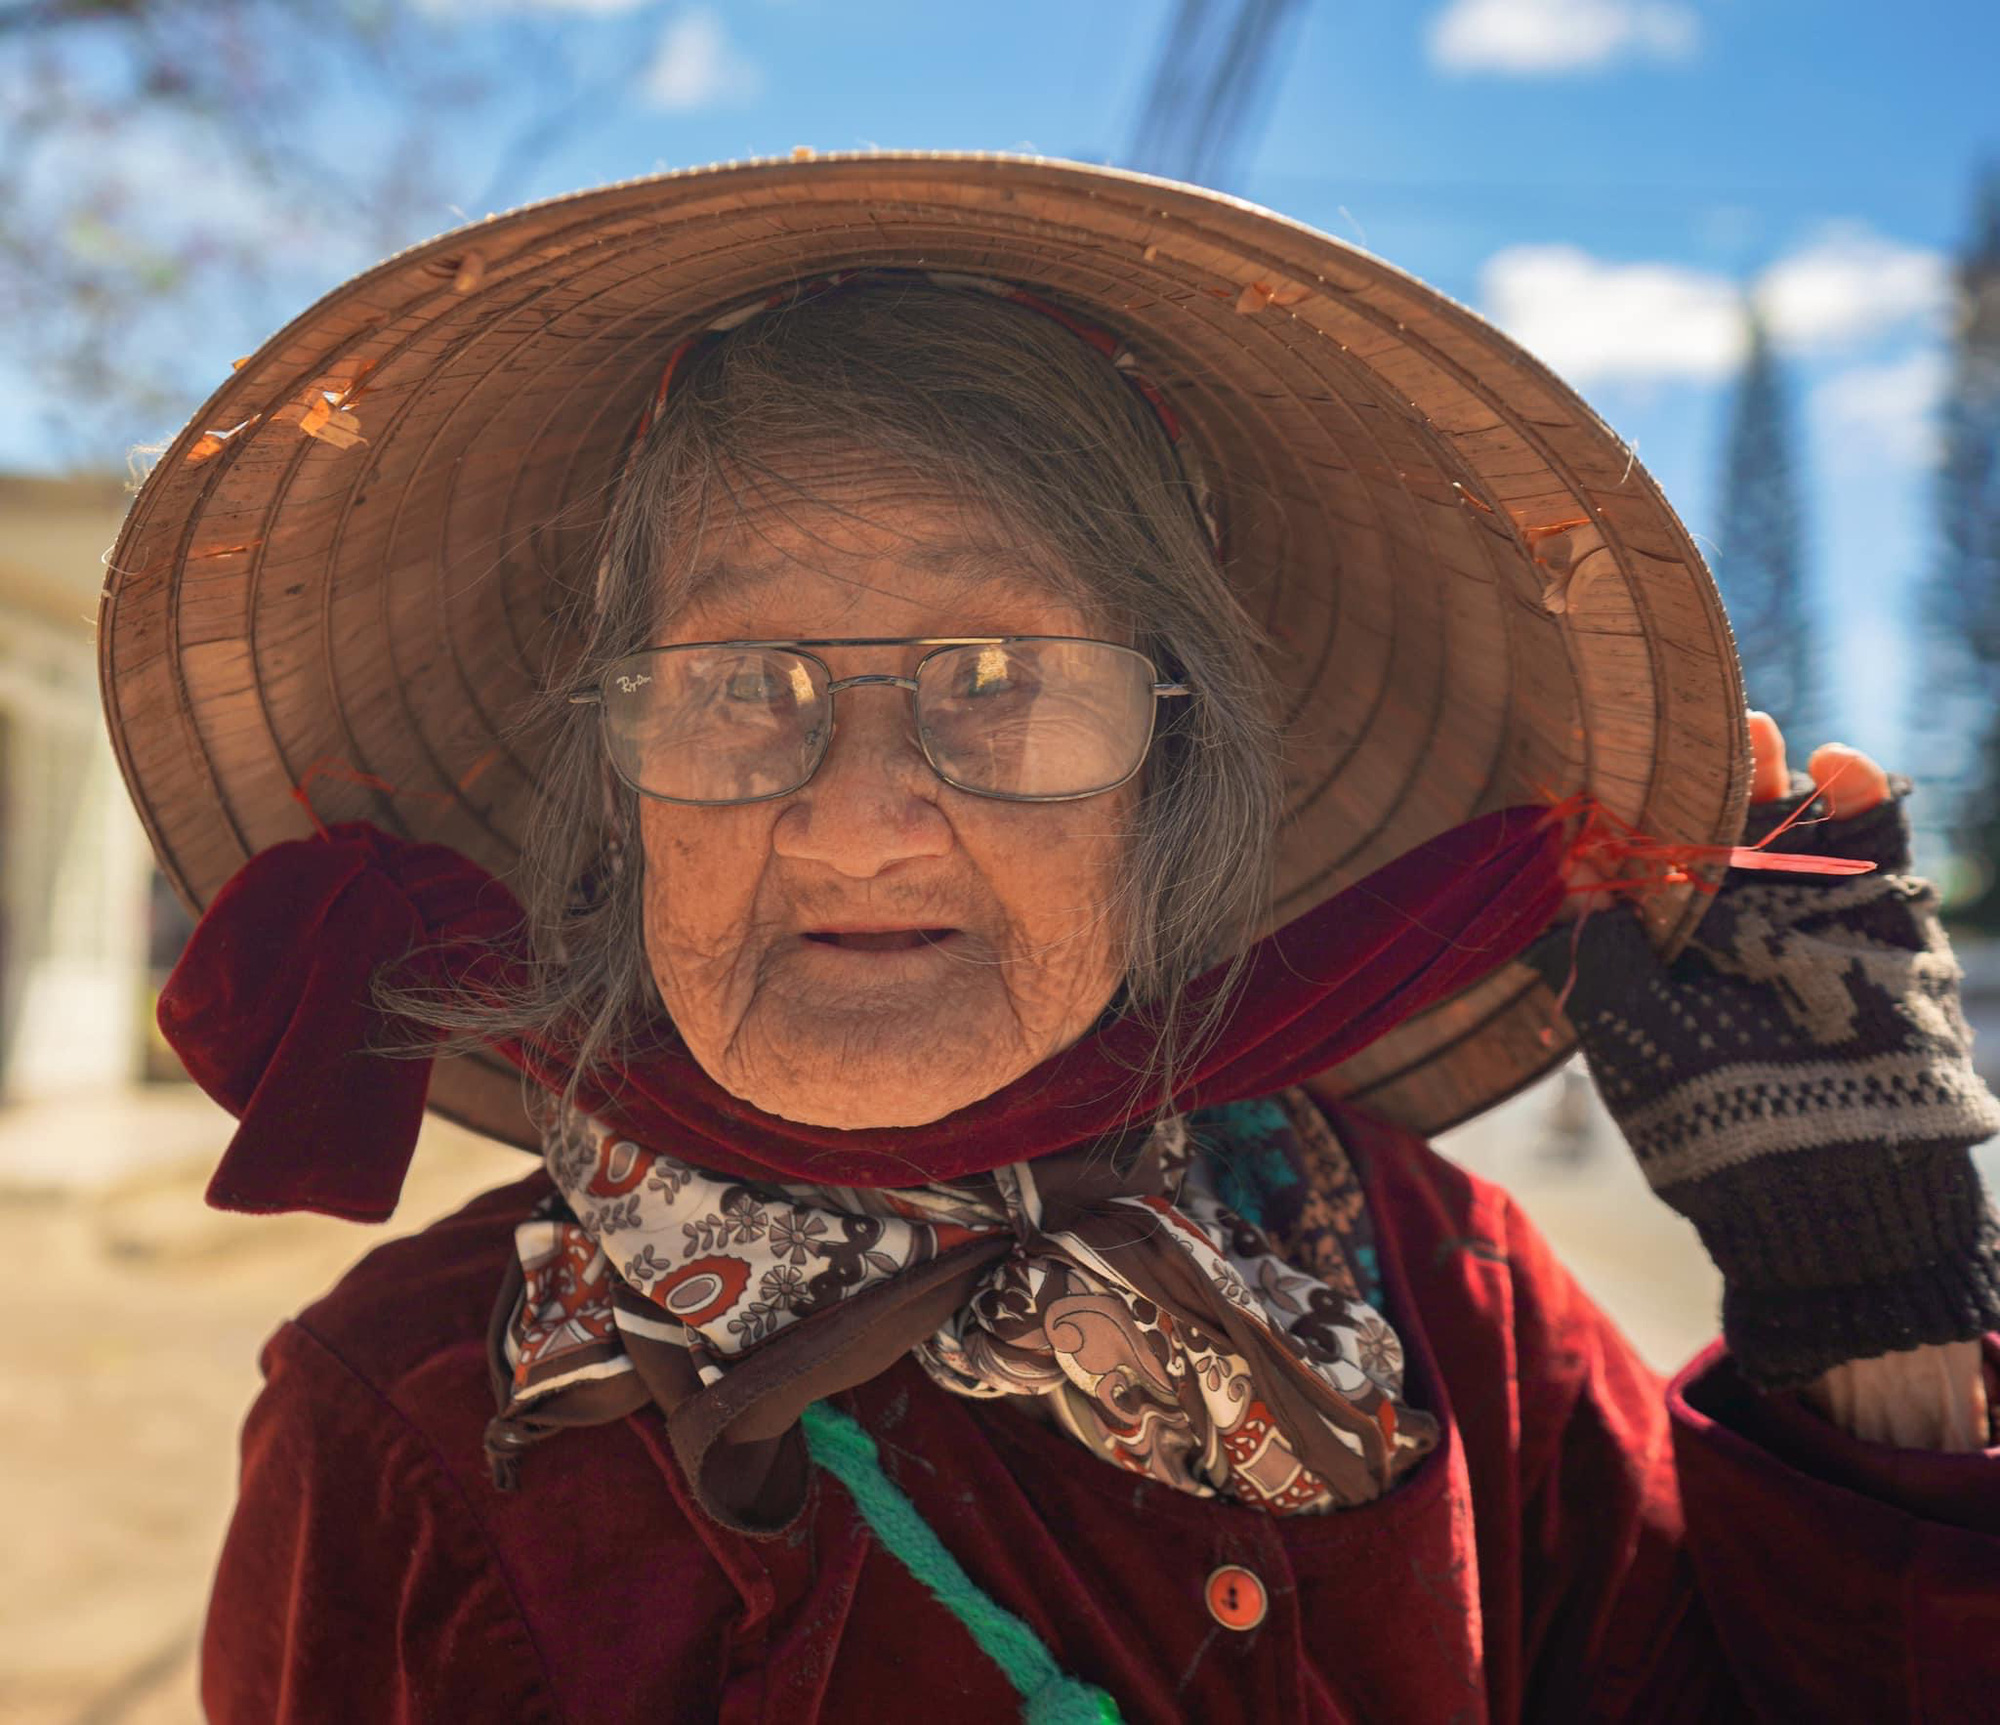 Gặp bà cụ 94 tuổi bán bỏng ngô dạo khắp Đà Lạt: Mỗi bức ảnh là câu chuyện khiến người ta cảm động  - Ảnh 1.